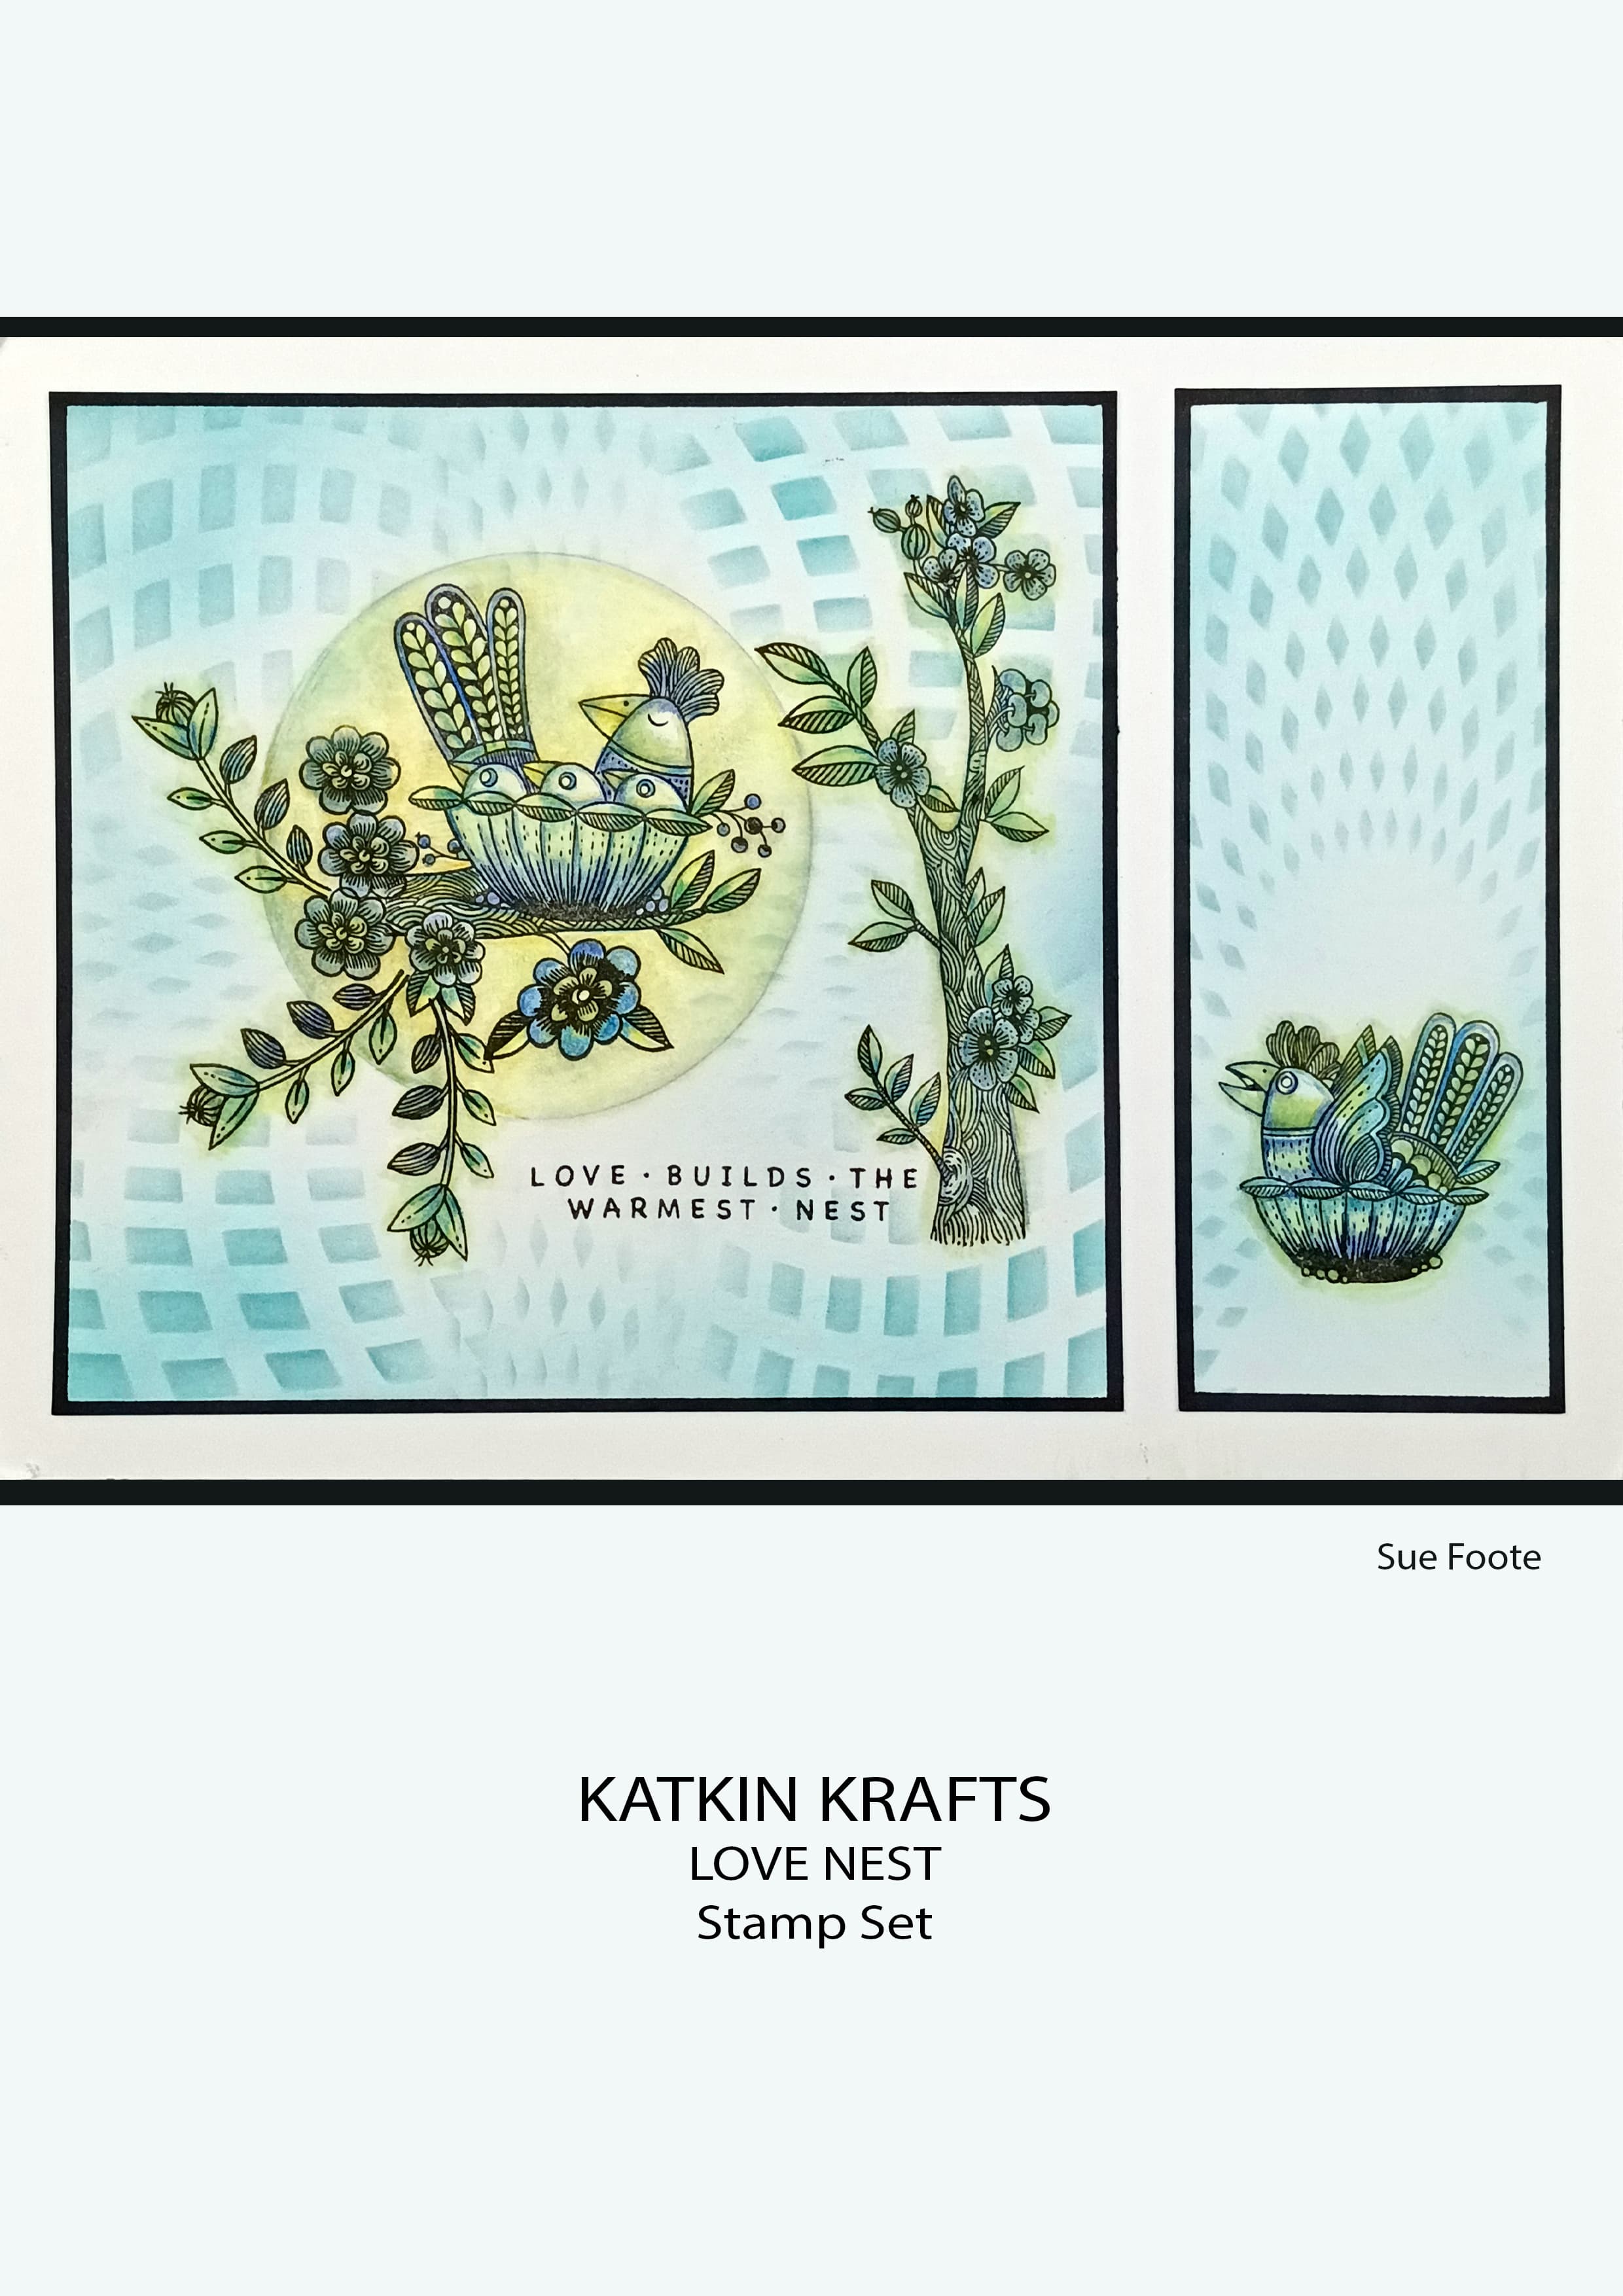 Katkin Krafts Love Nest 6 in x 8 in Clear Stamp Set